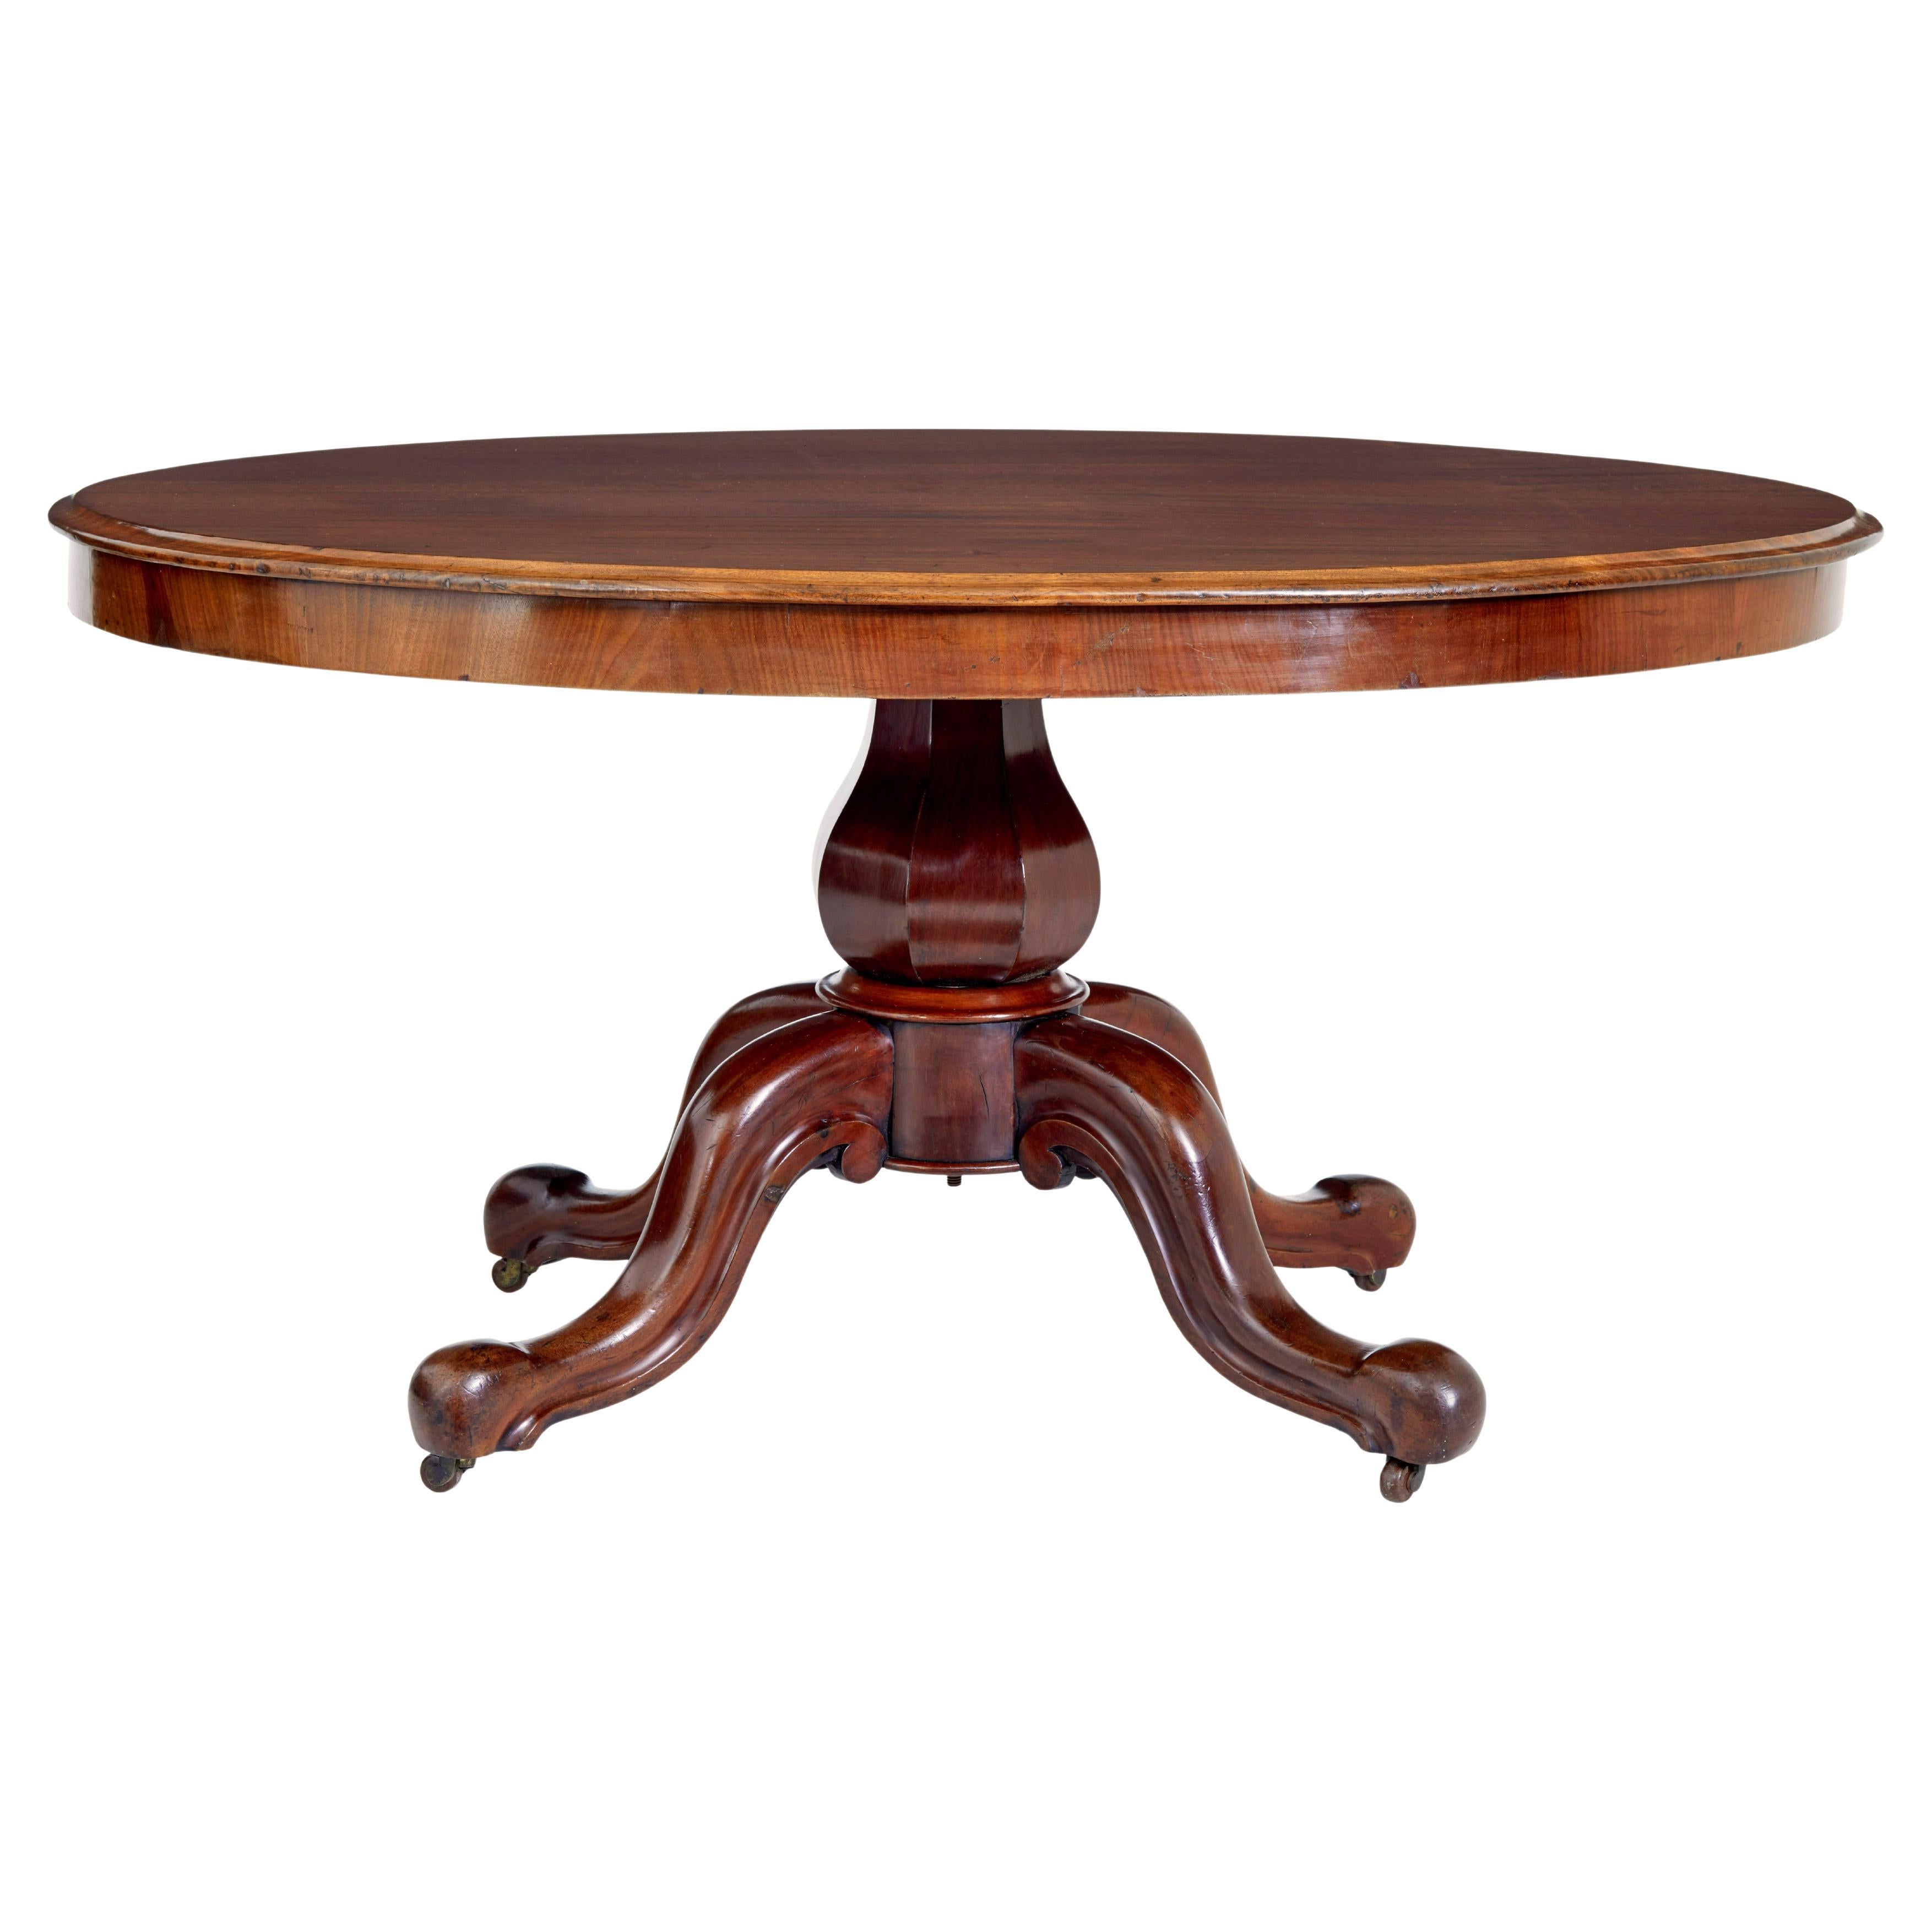 Victorian 19th century mahogany breakfast table